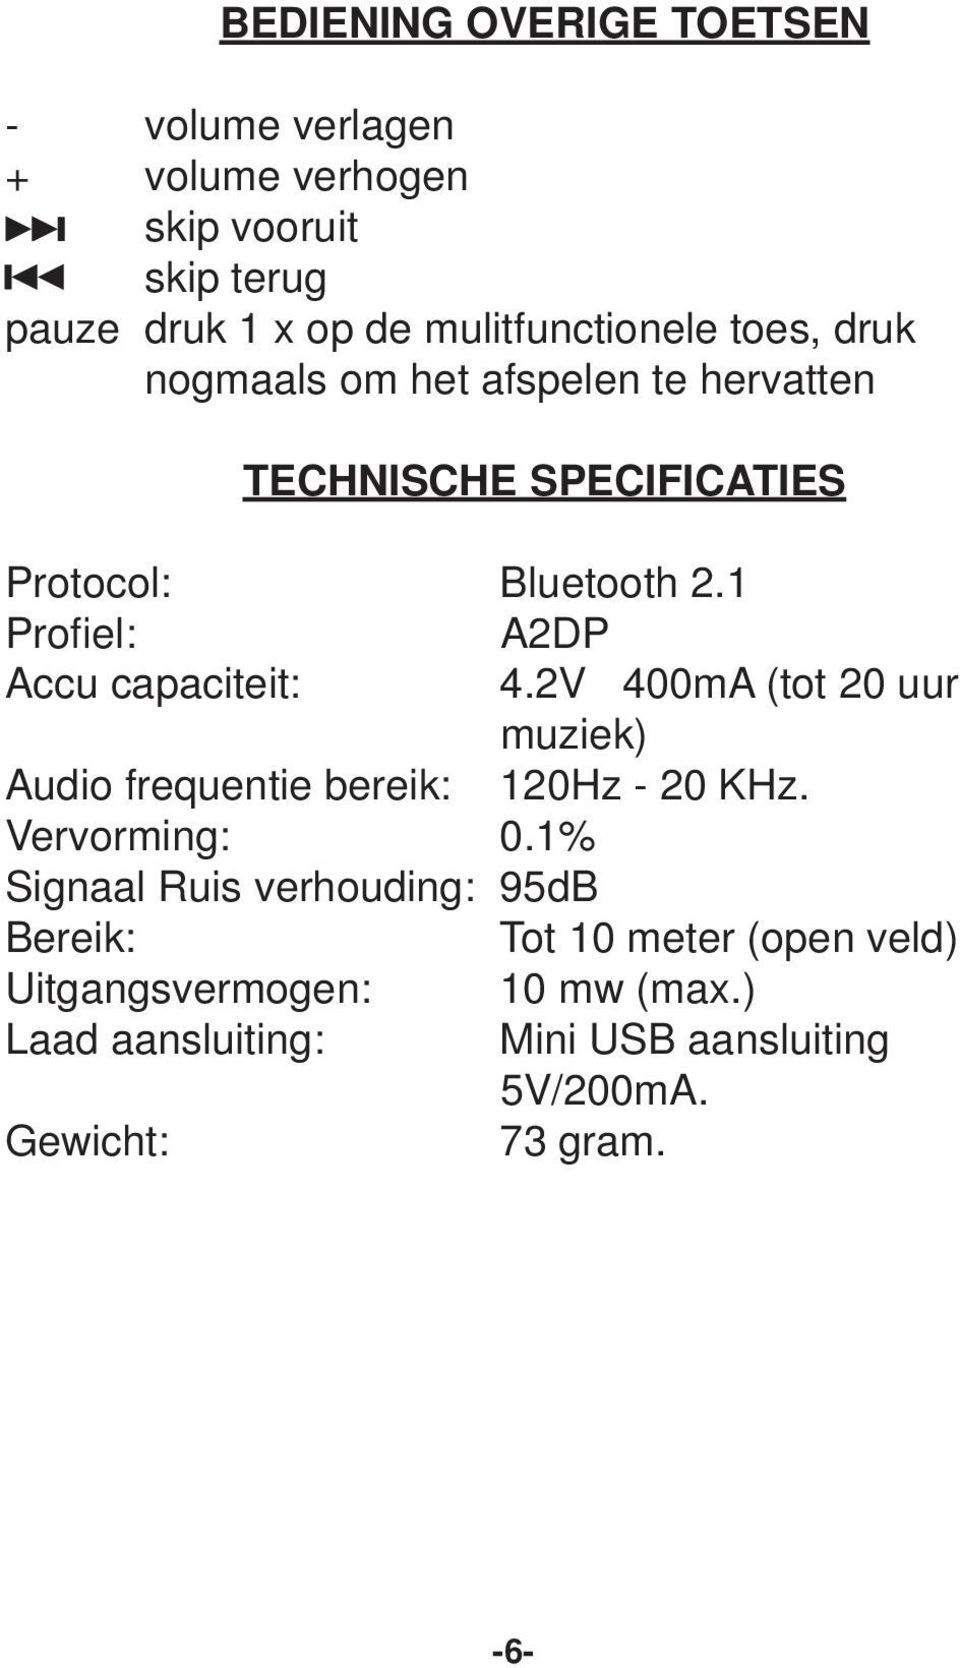 1 Profiel: A2DP Accu capaciteit: 4.2V 400mA (tot 20 uur muziek) Audio frequentie bereik: 120Hz - 20 KHz. Vervorming: 0.